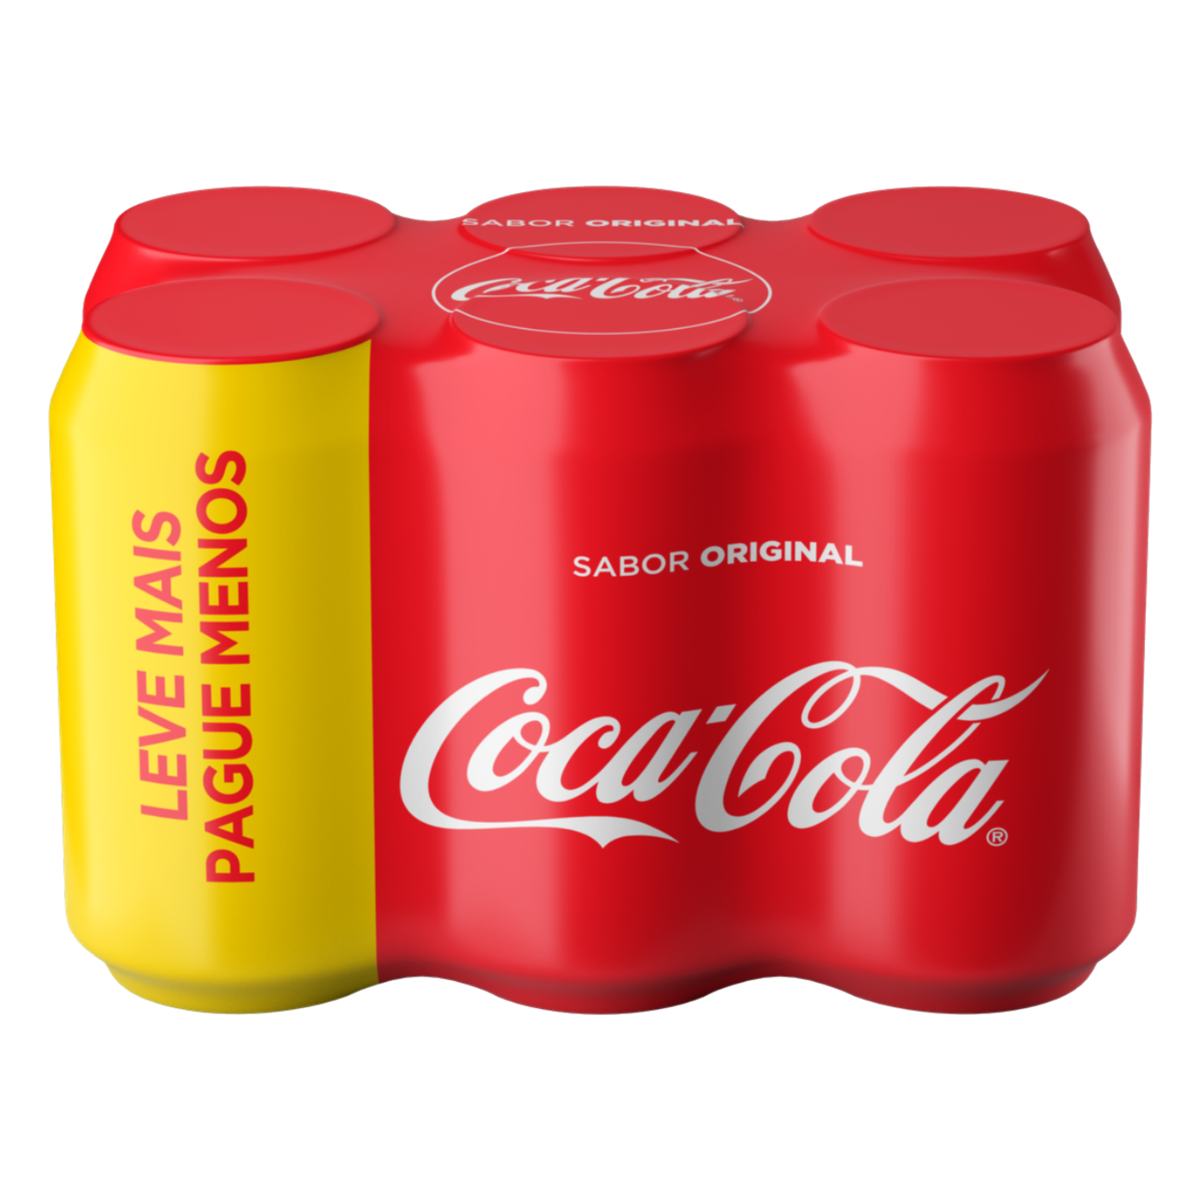 Xis Completo + Coca-Cola lata